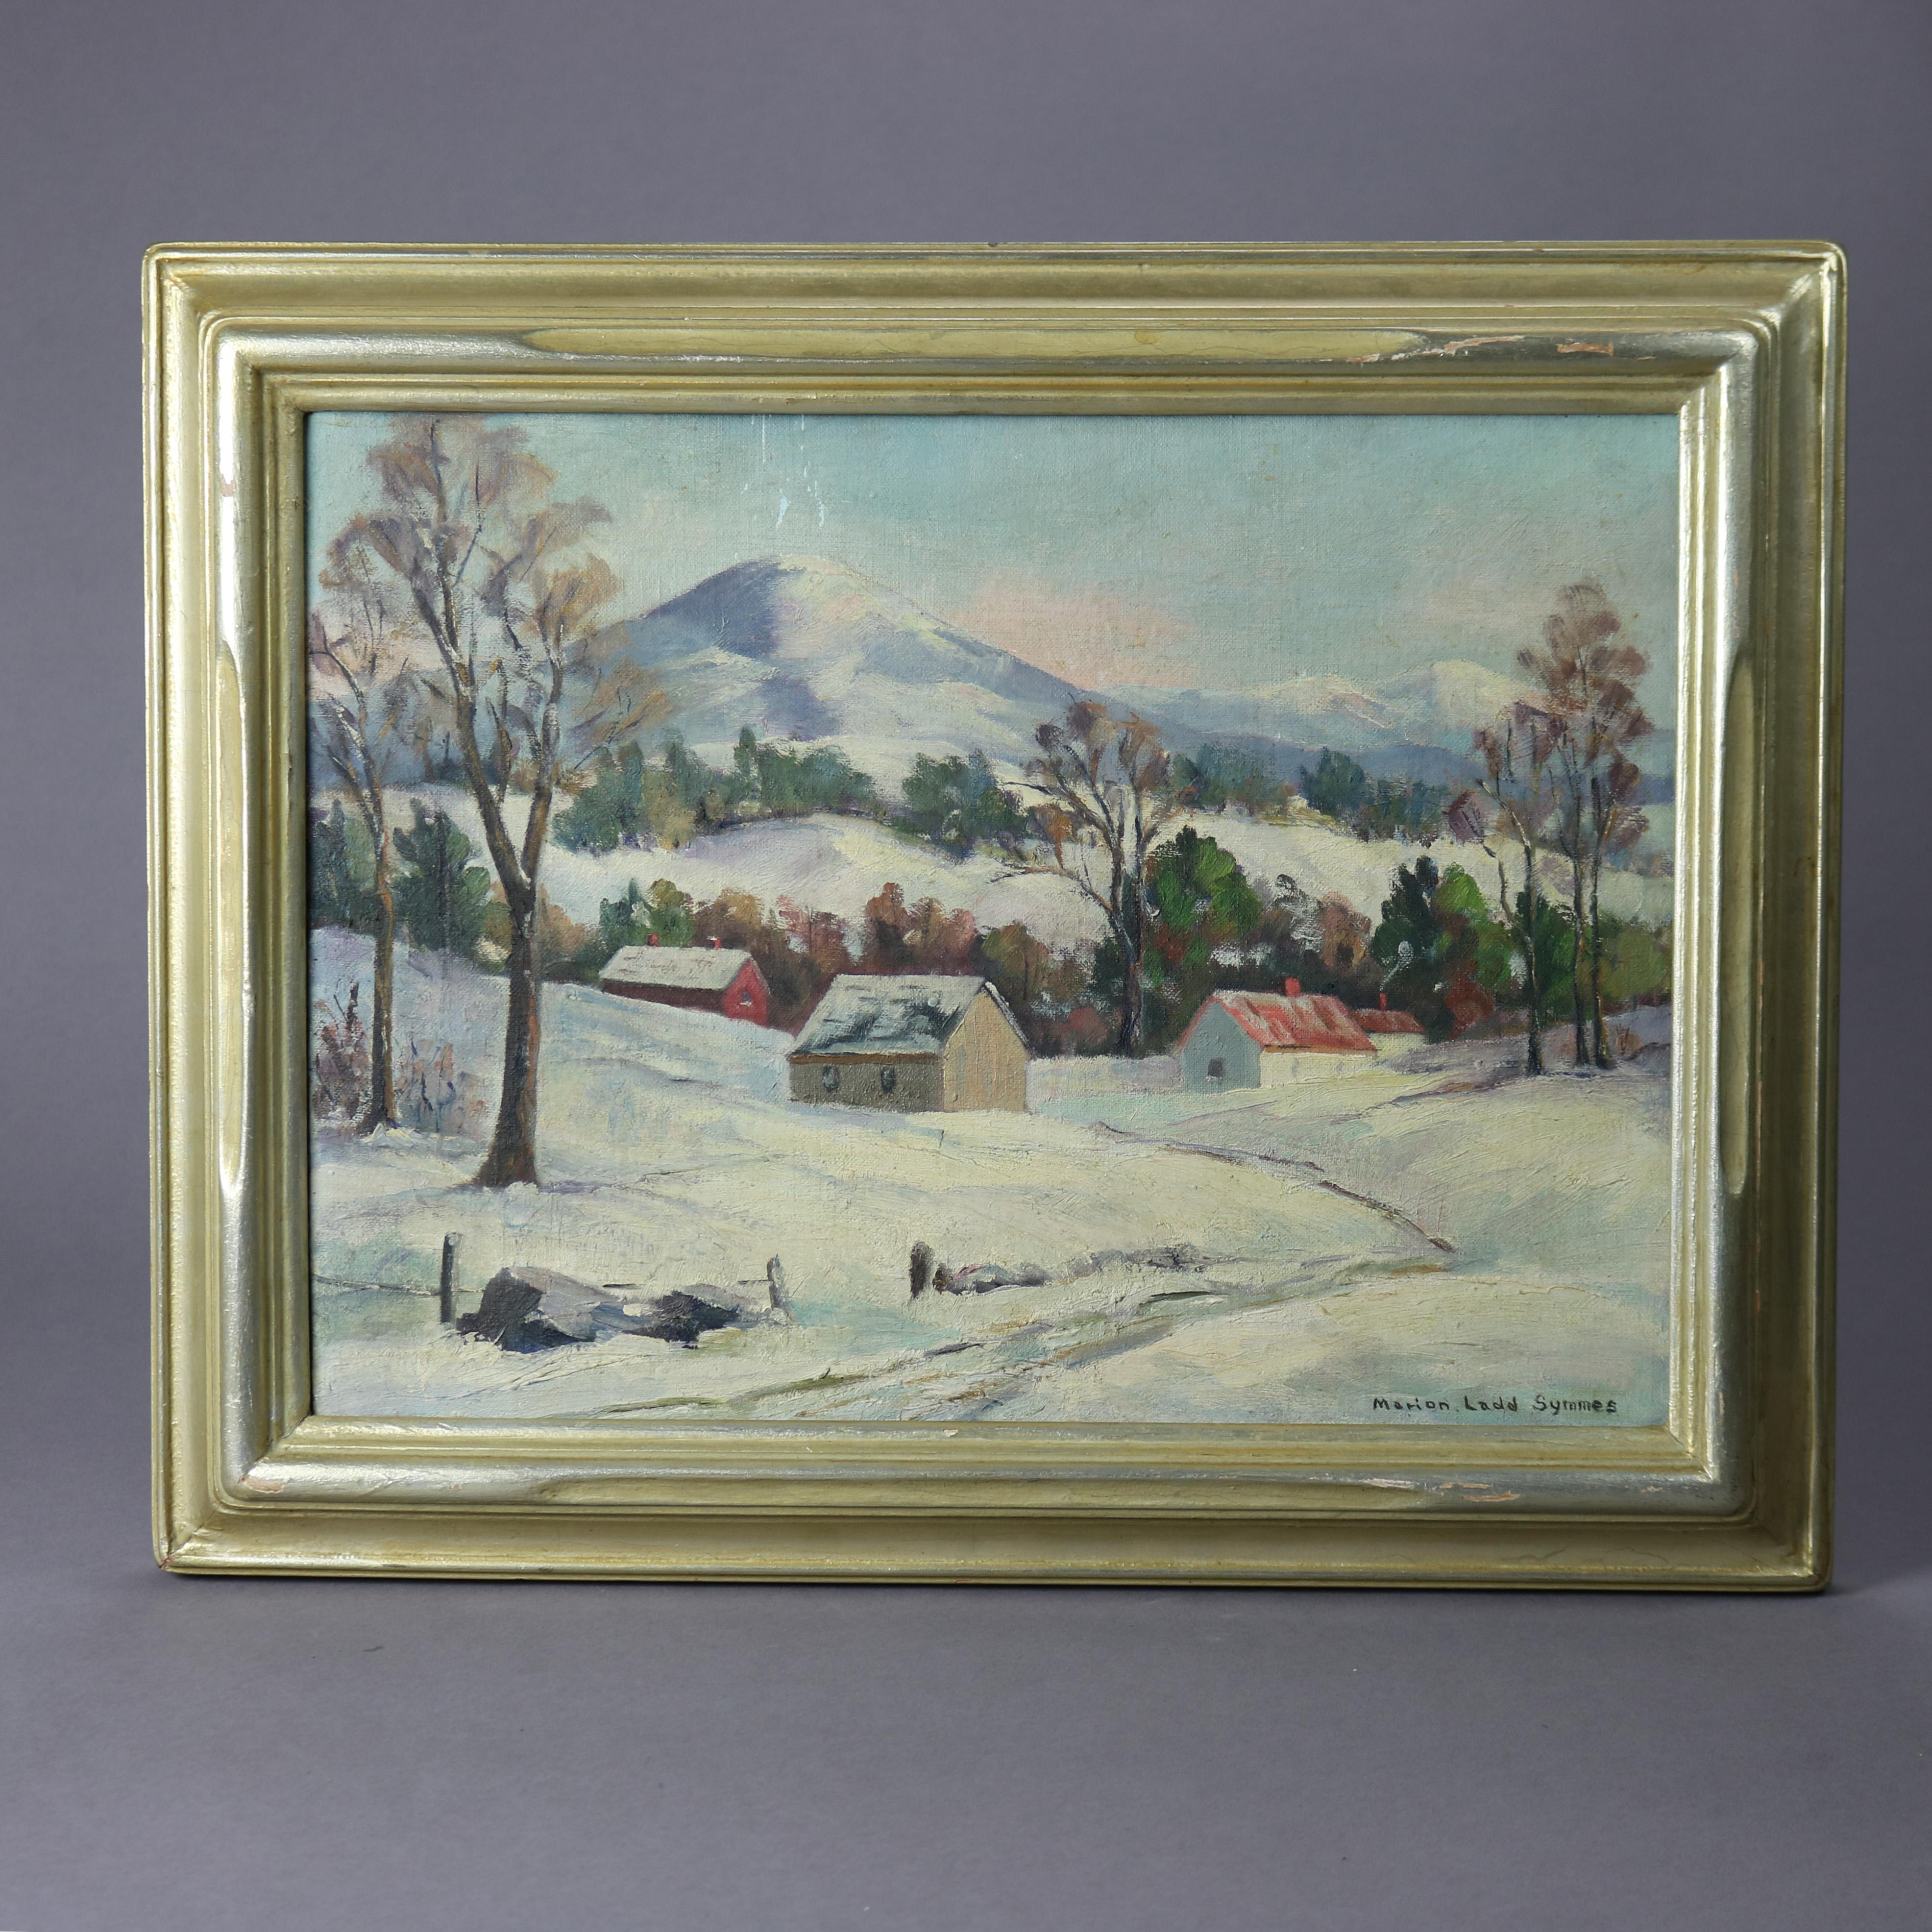 Une peinture de paysage ancienne offre une scène de paysage à l'huile sur panneau dans la manière de l'école de New Hope intitulée Mt. Antrim, NH, signée par Marion Ladd Symmes, assise dans un cadre en bois doré, circa 1910

Dimensions - 15,25 